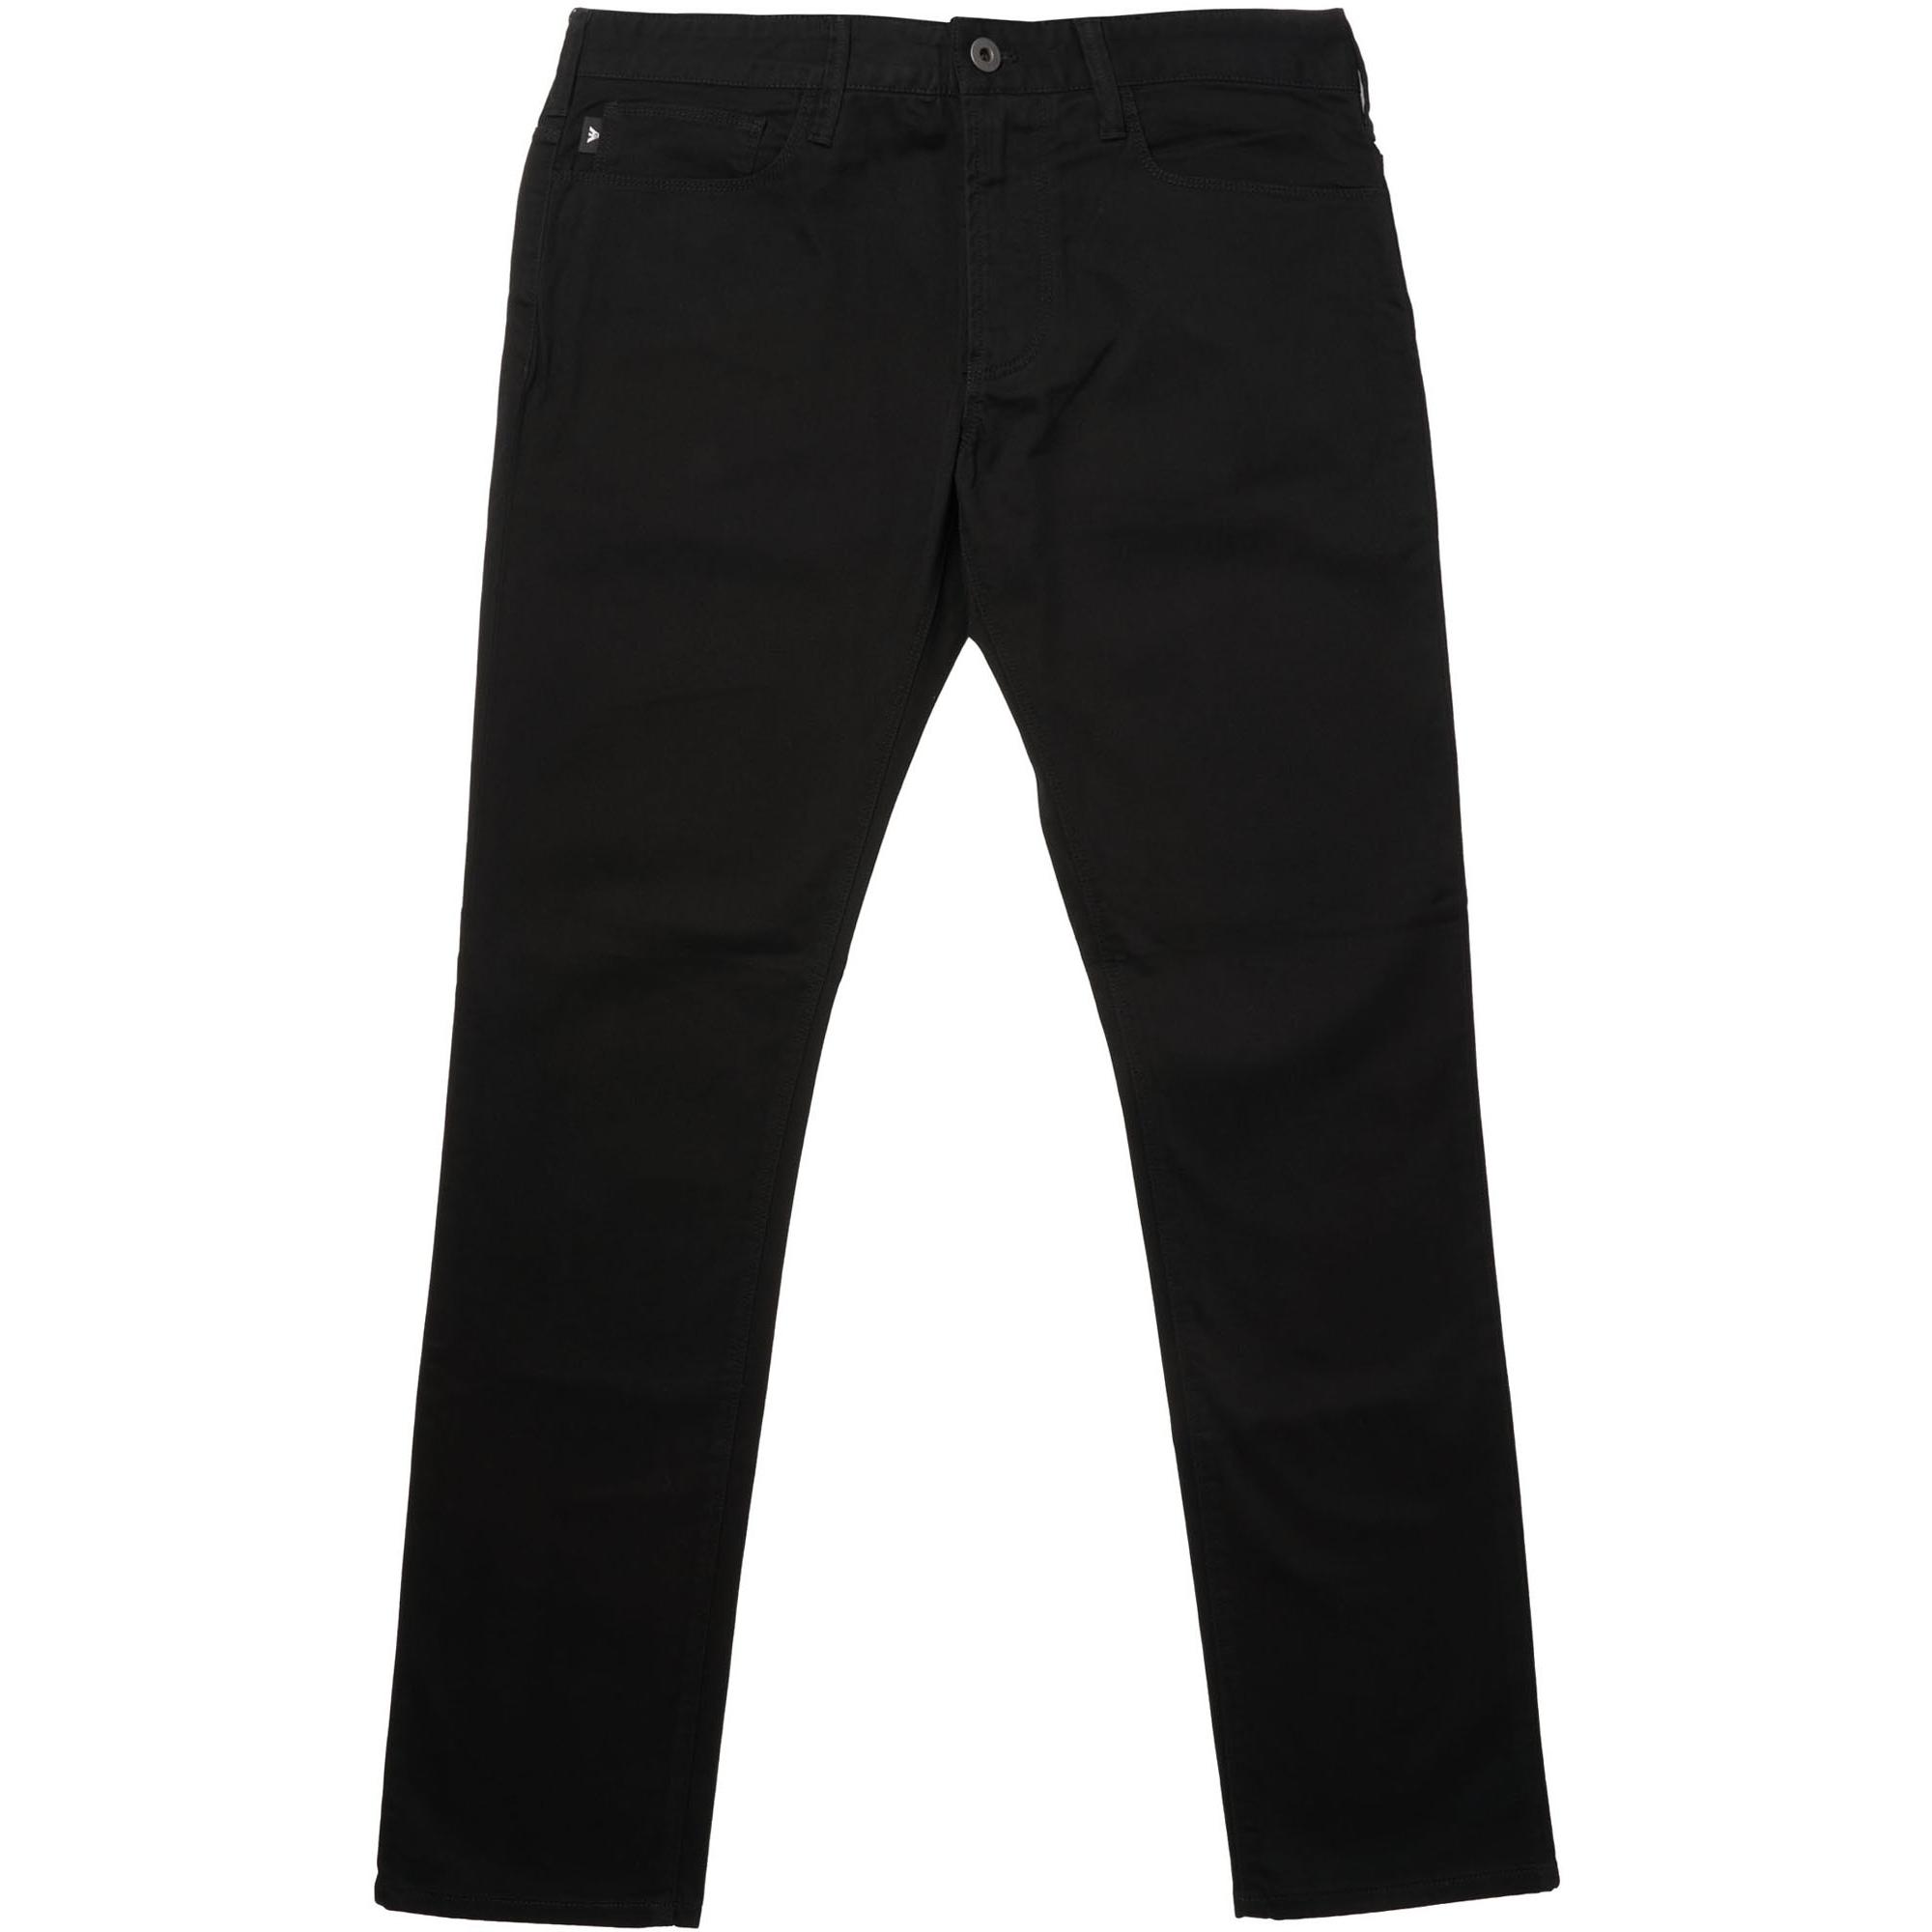 Emporio Armani Denim J06 Slim Jeans in Nero (Black) for Men - Save 69% -  Lyst